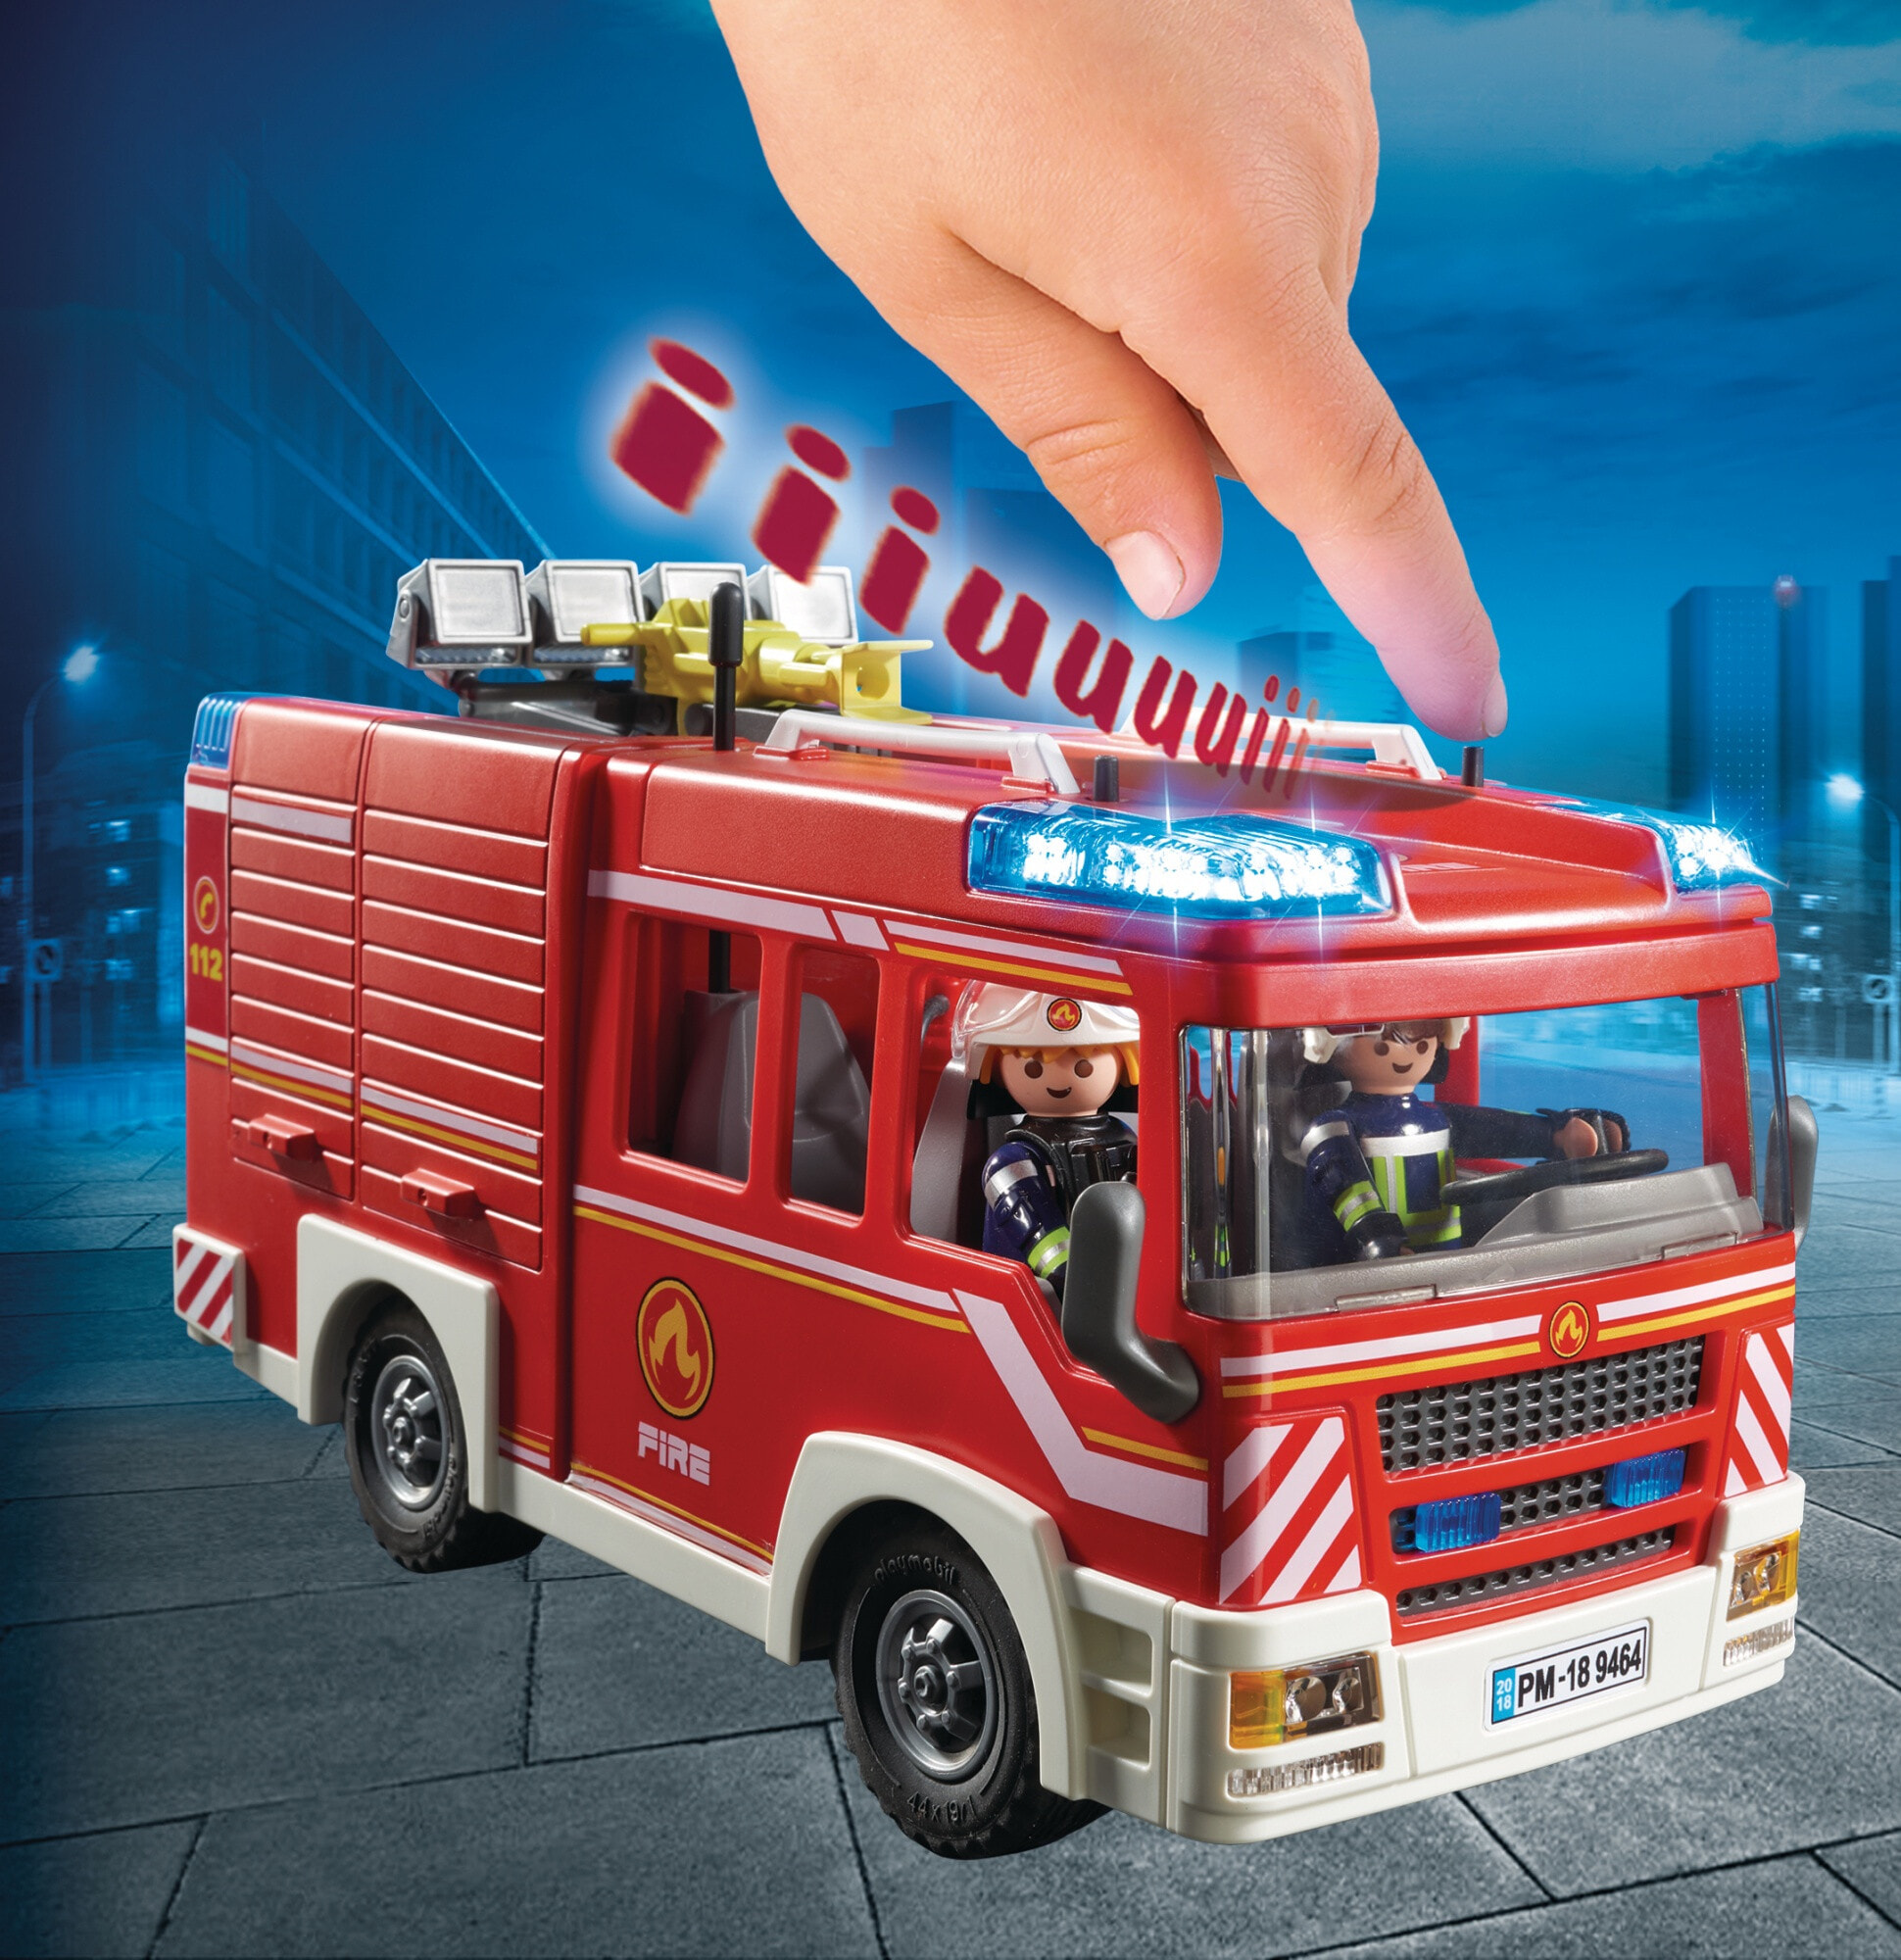 Игровой набор с элементами конструктора Playmobil Пожарная машина со светом и звуком,9464